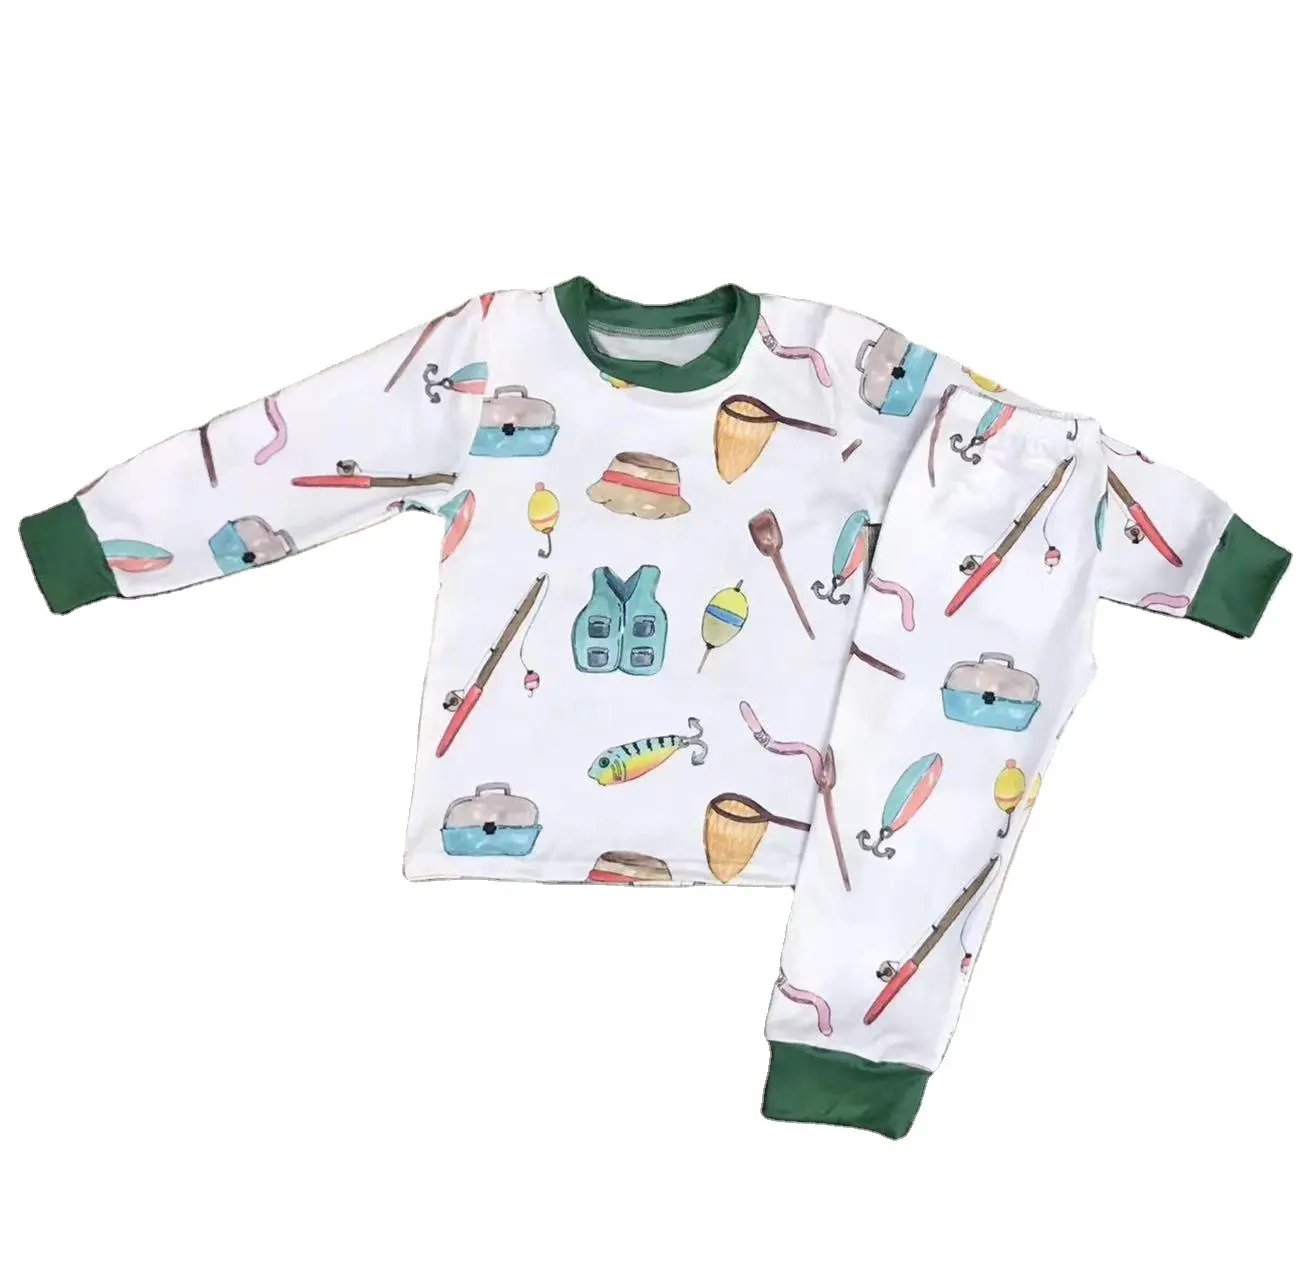 O mais recente estilo de primavera branco pequeno colete vara de pesca chapéu peixe impressão verde escuro decote manguito moda pijama infantil